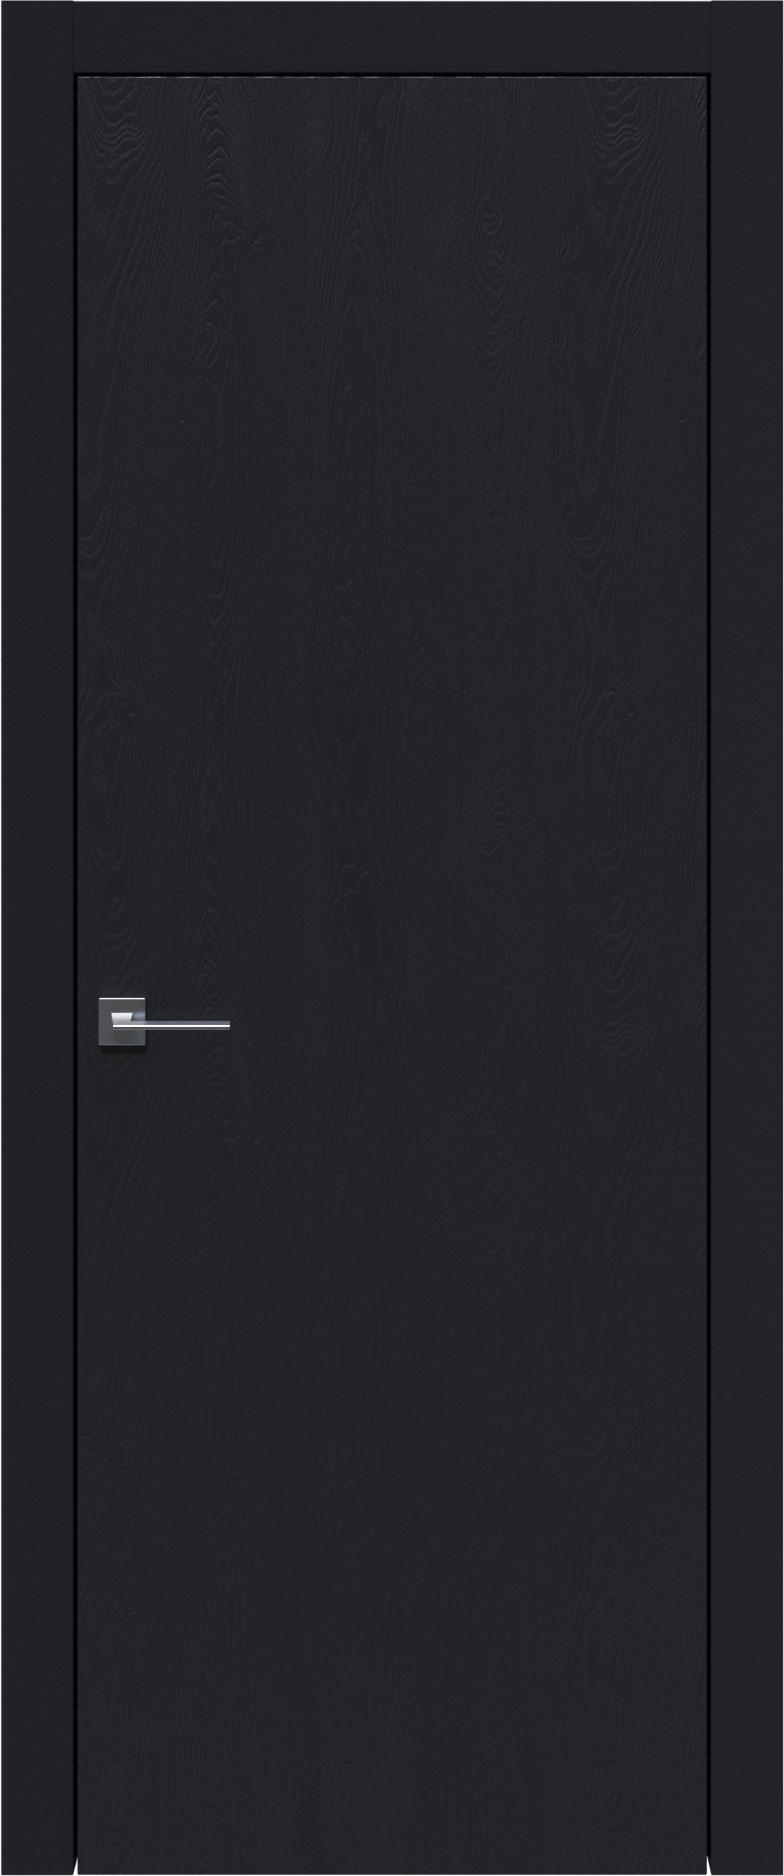 Tivoli А-1 цвет - Черная эмаль по шпону (RAL 9004) Без стекла (ДГ)